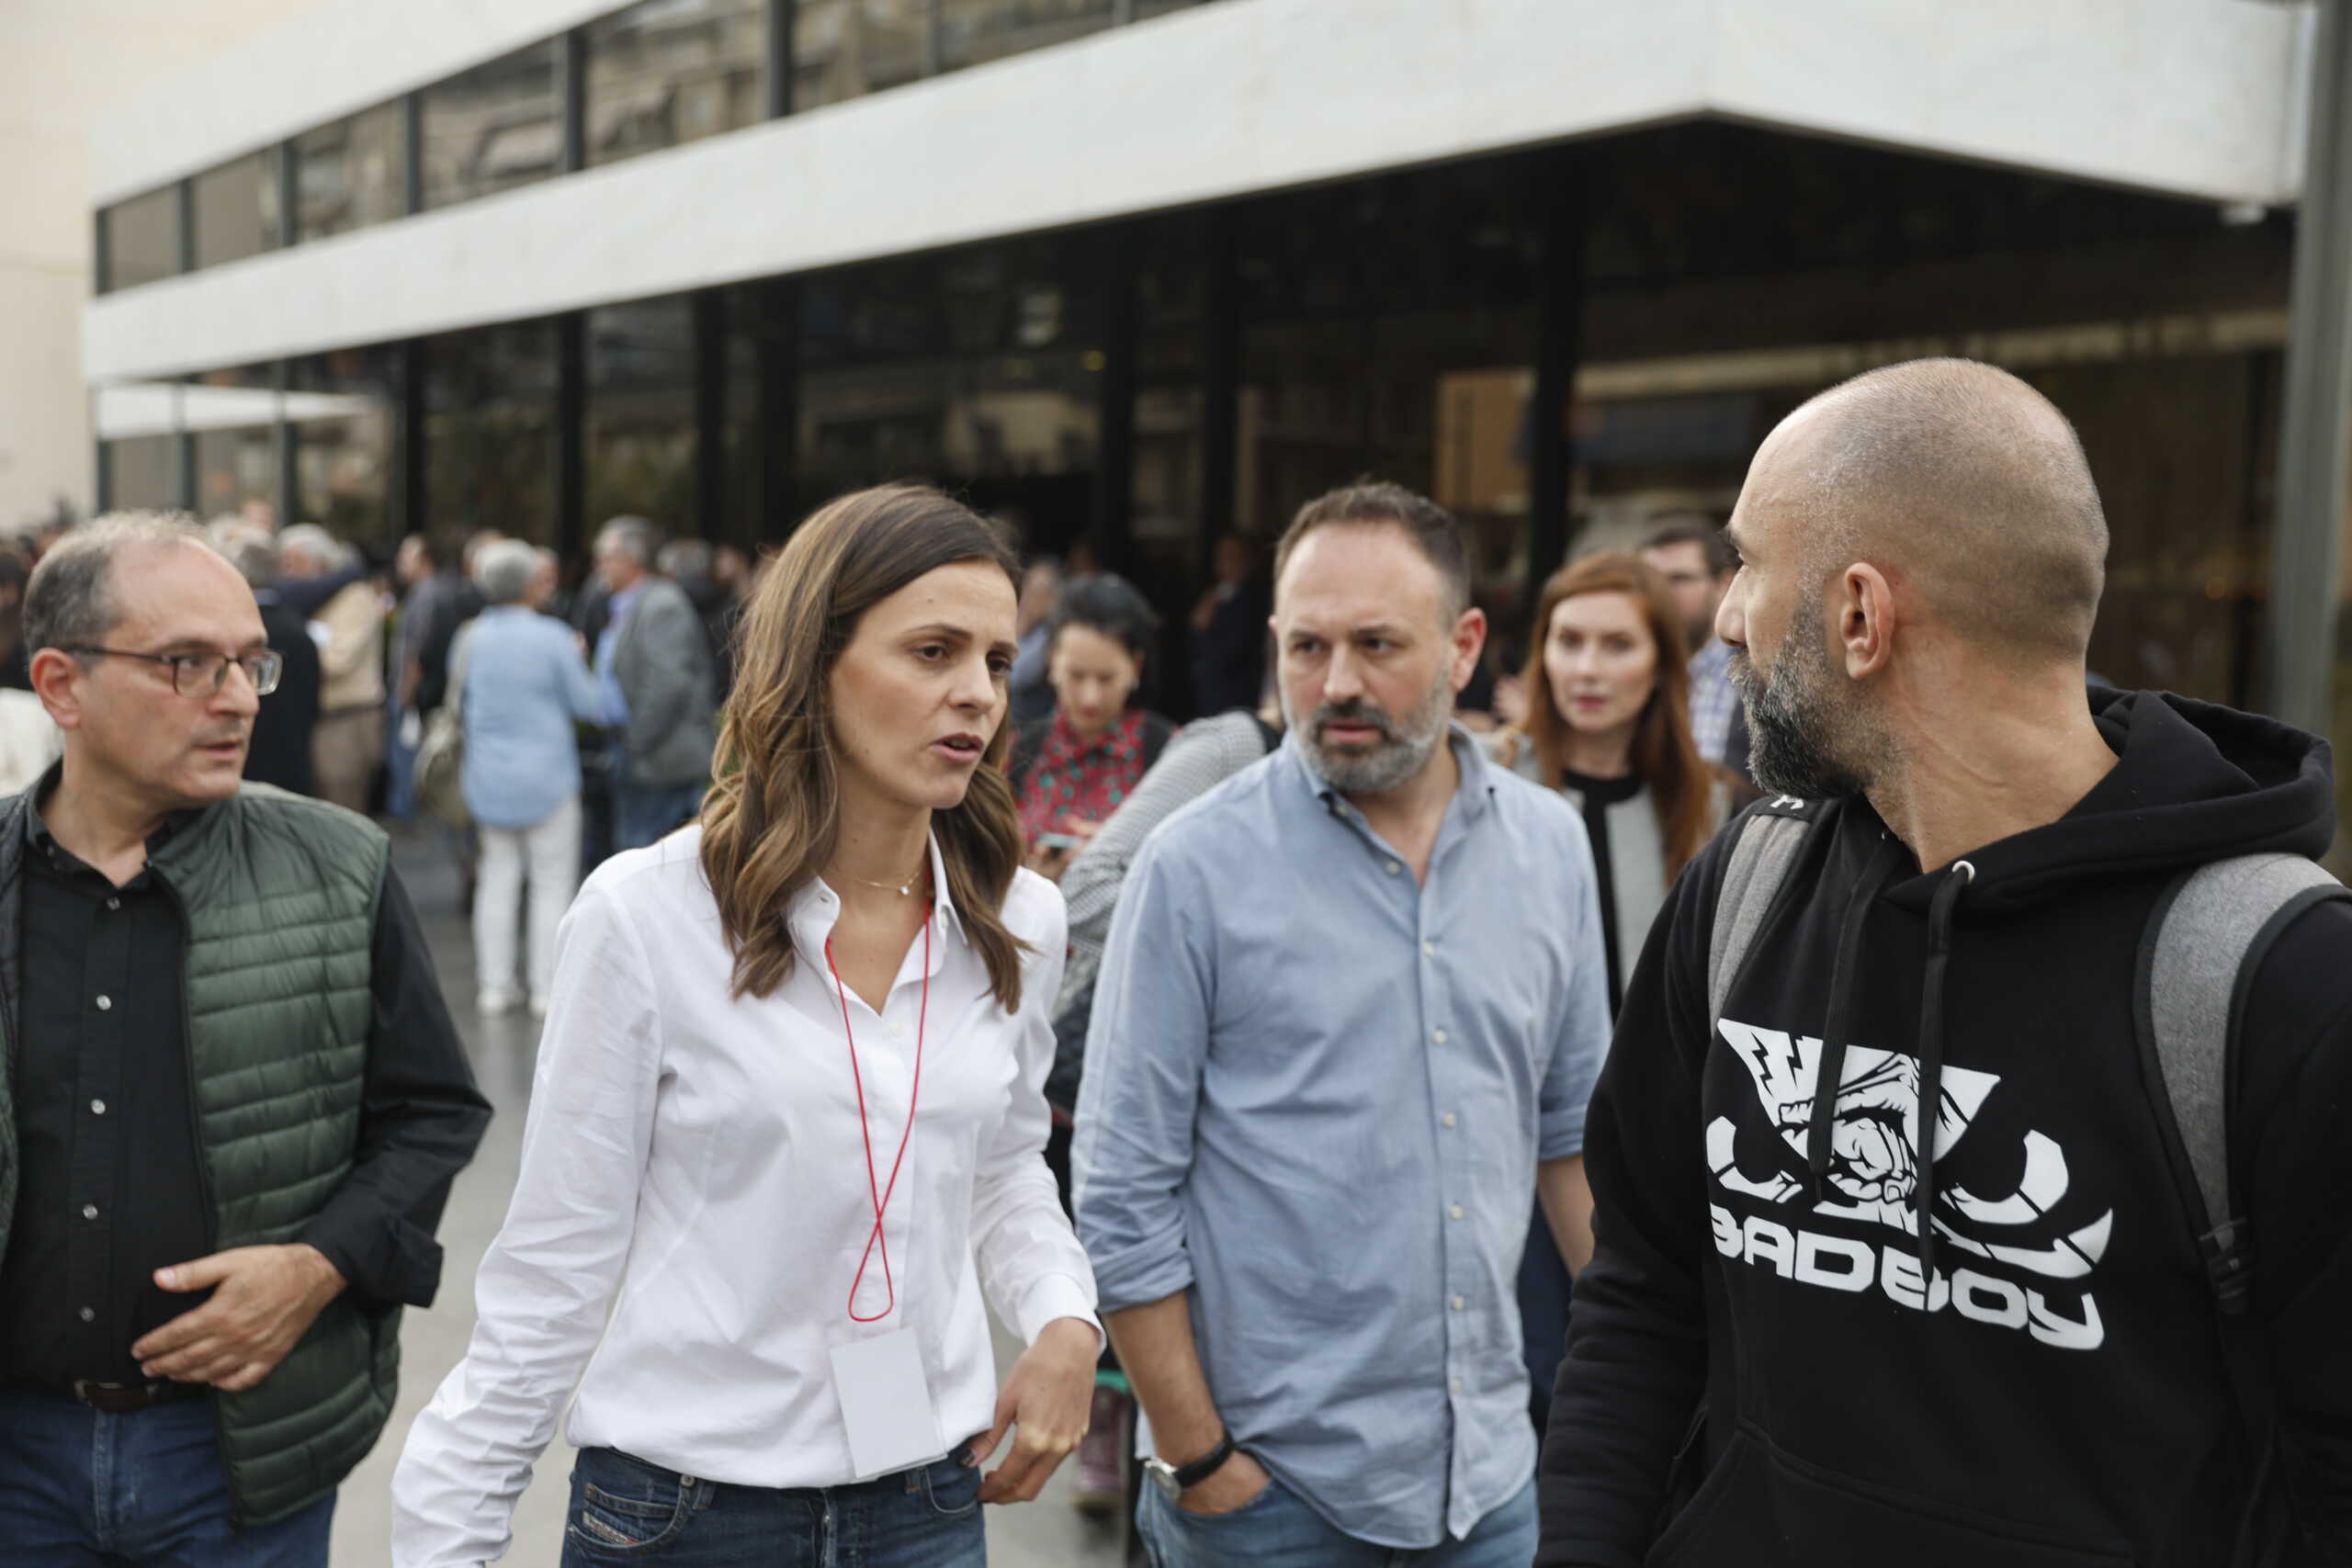 Τσακαλώτος – Αχτσιόγλου: Δεν φύγαμε από τον ΣΥΡΙΖΑ, αποχωρήσαμε από τη συνεδρίαση γιατί δεν έγινε καμία δημοκρατική διαδικασία